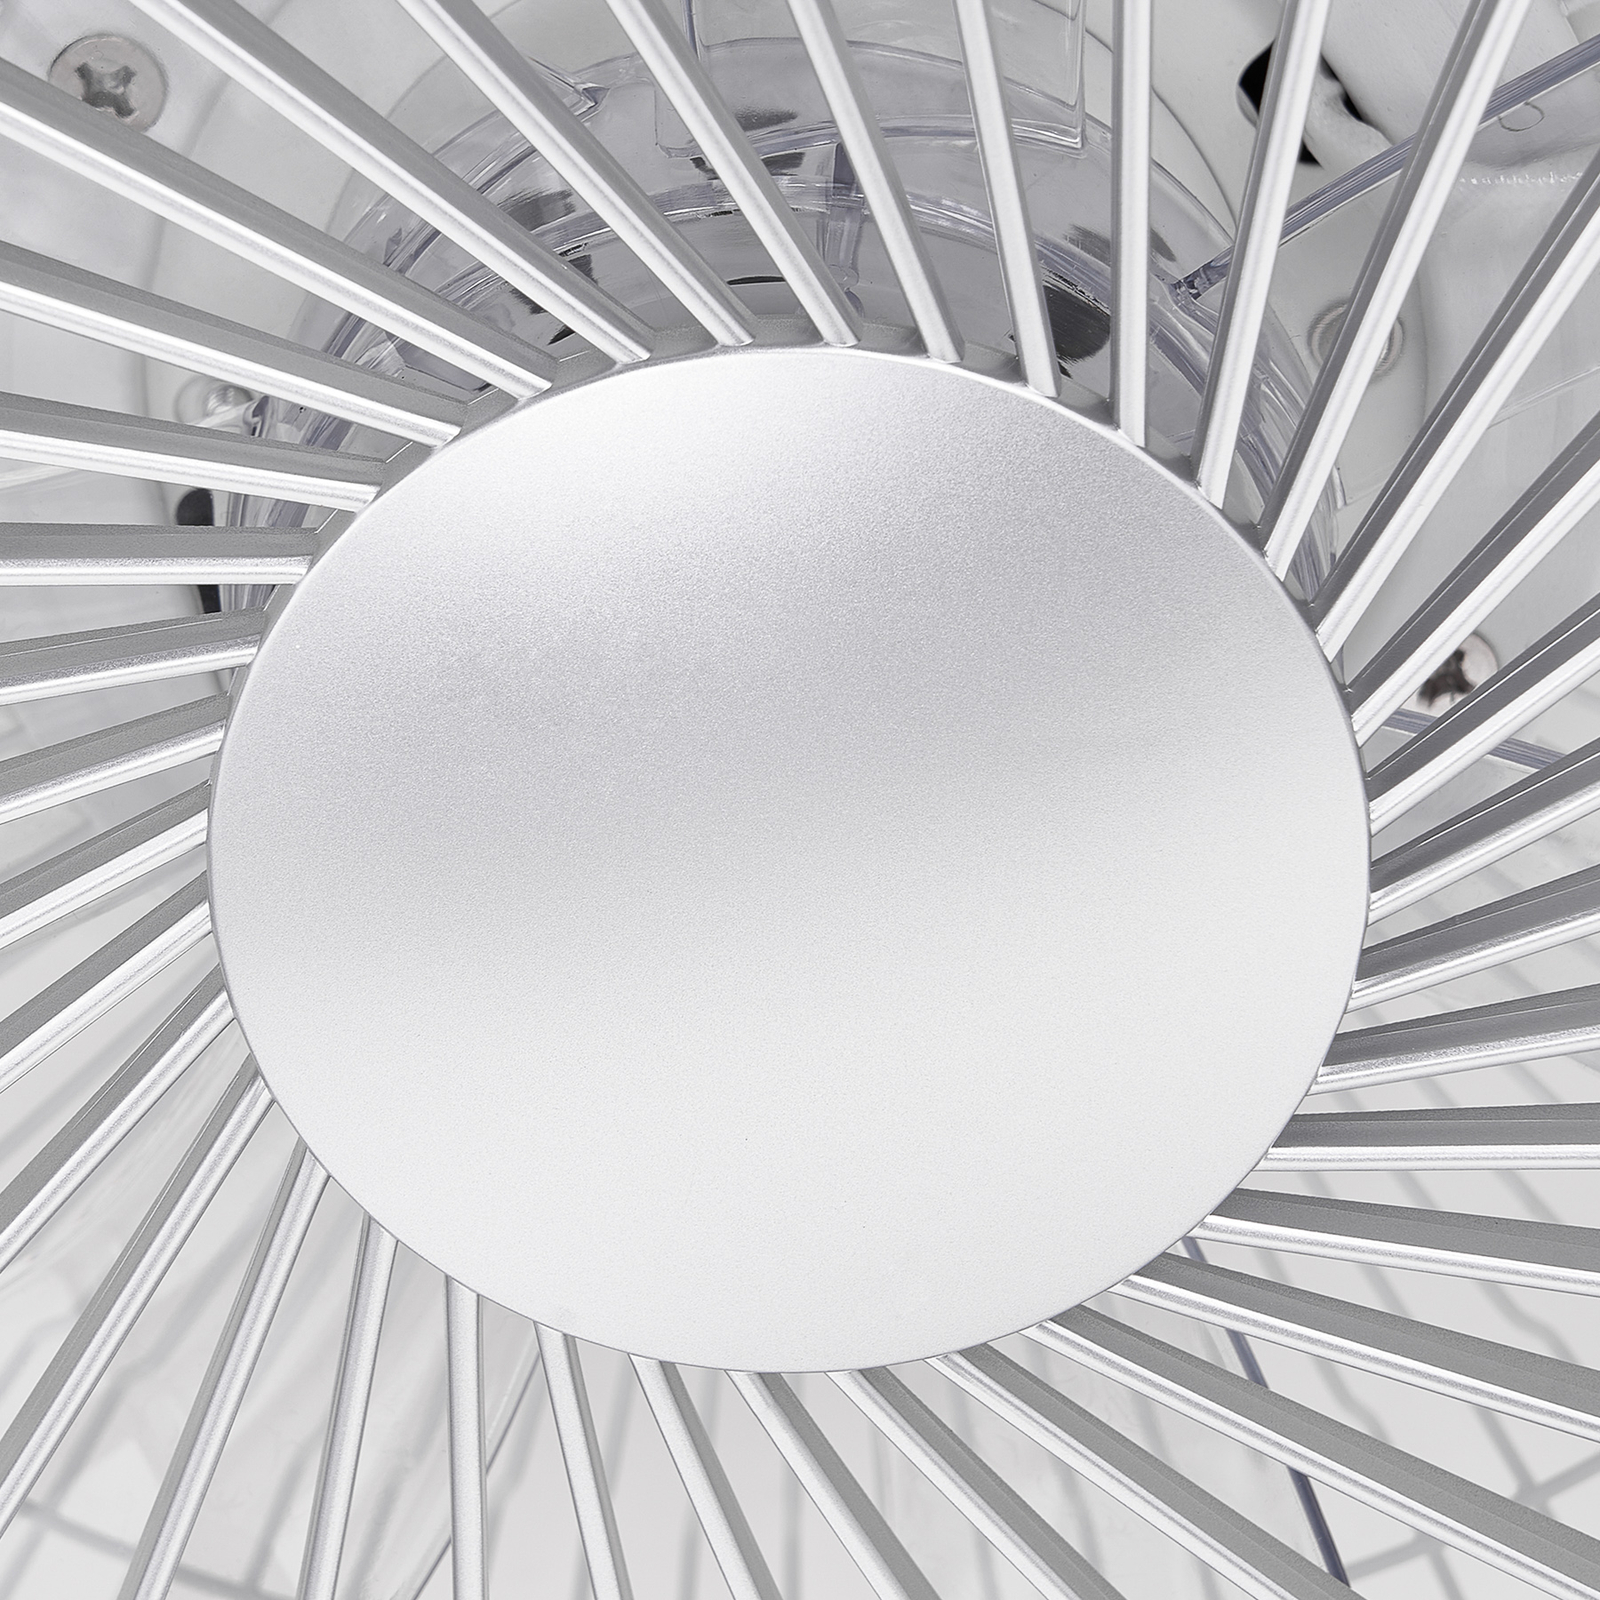 Starluna Orligo LED mennyezeti ventilátor, ezüst